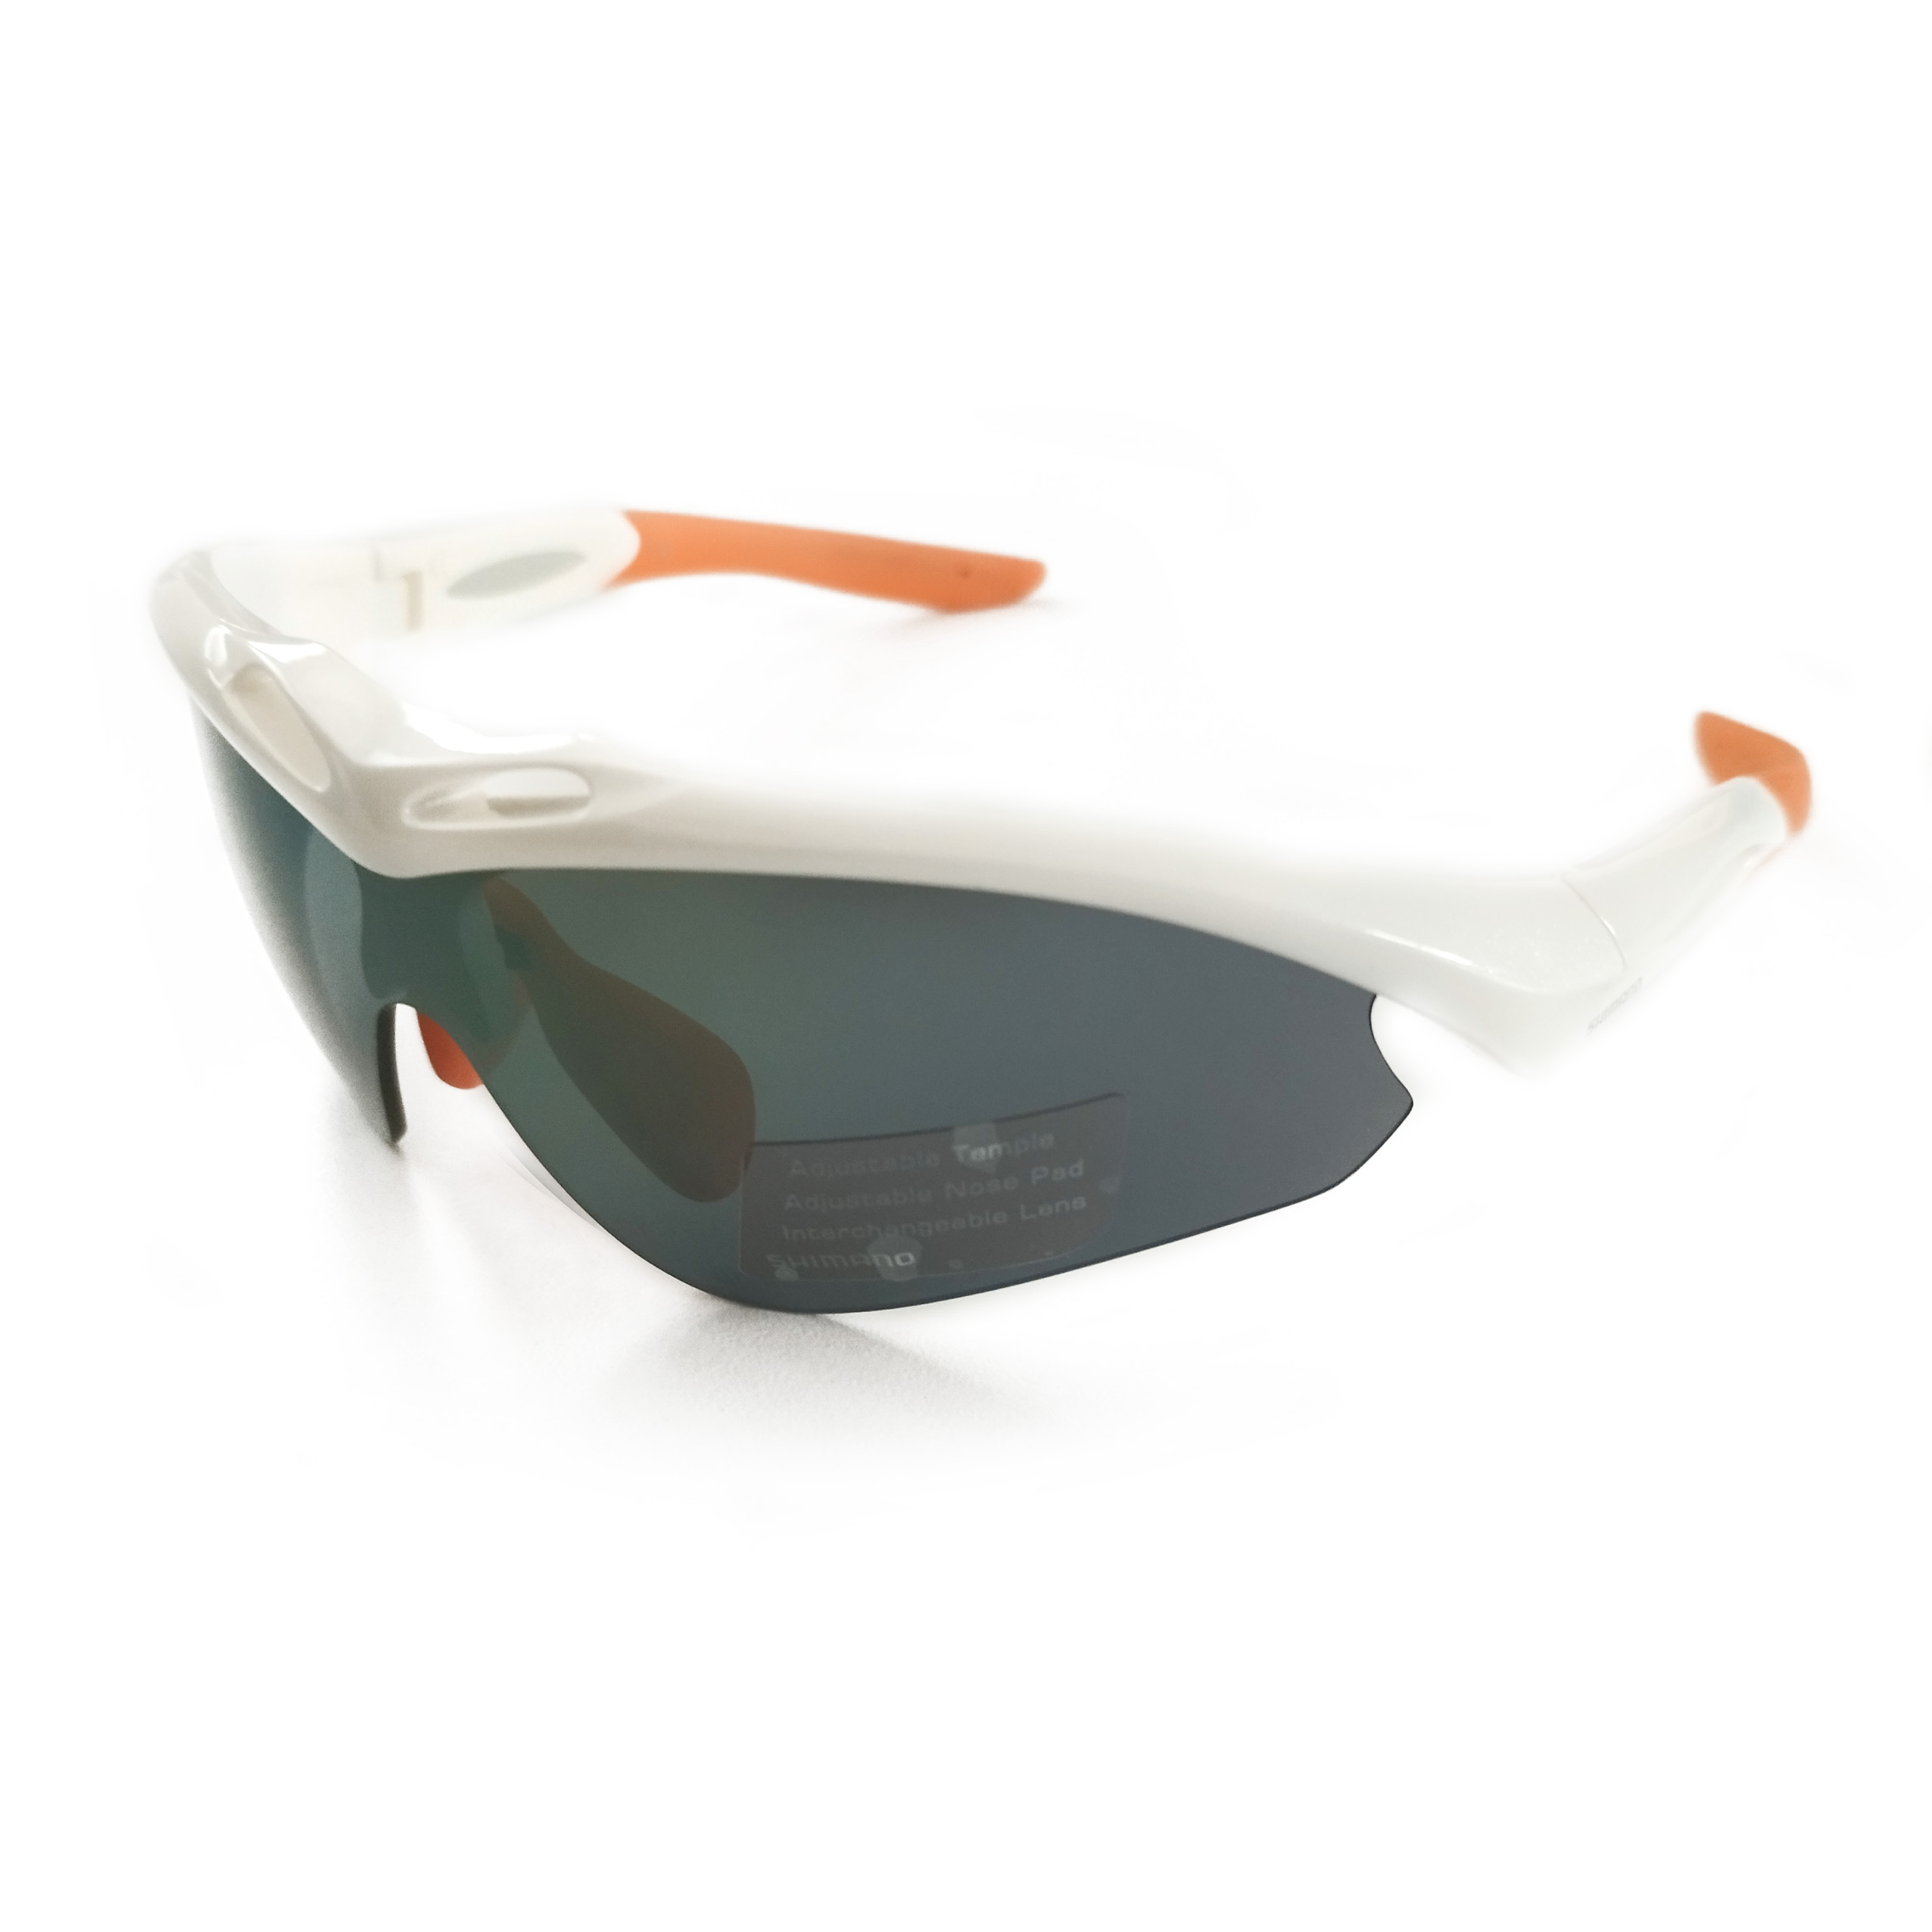 Shimano brýle S50R, bílá/oranžová, skla zrcadlově oranžová